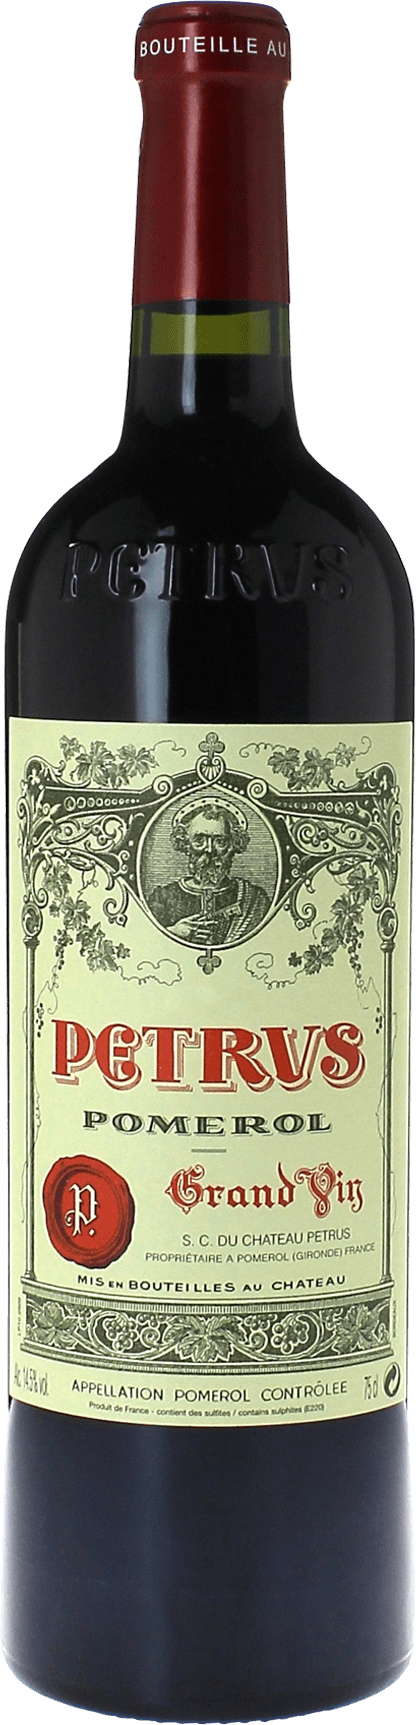 Petrus 1985  Pomerol, Bordeaux rouge